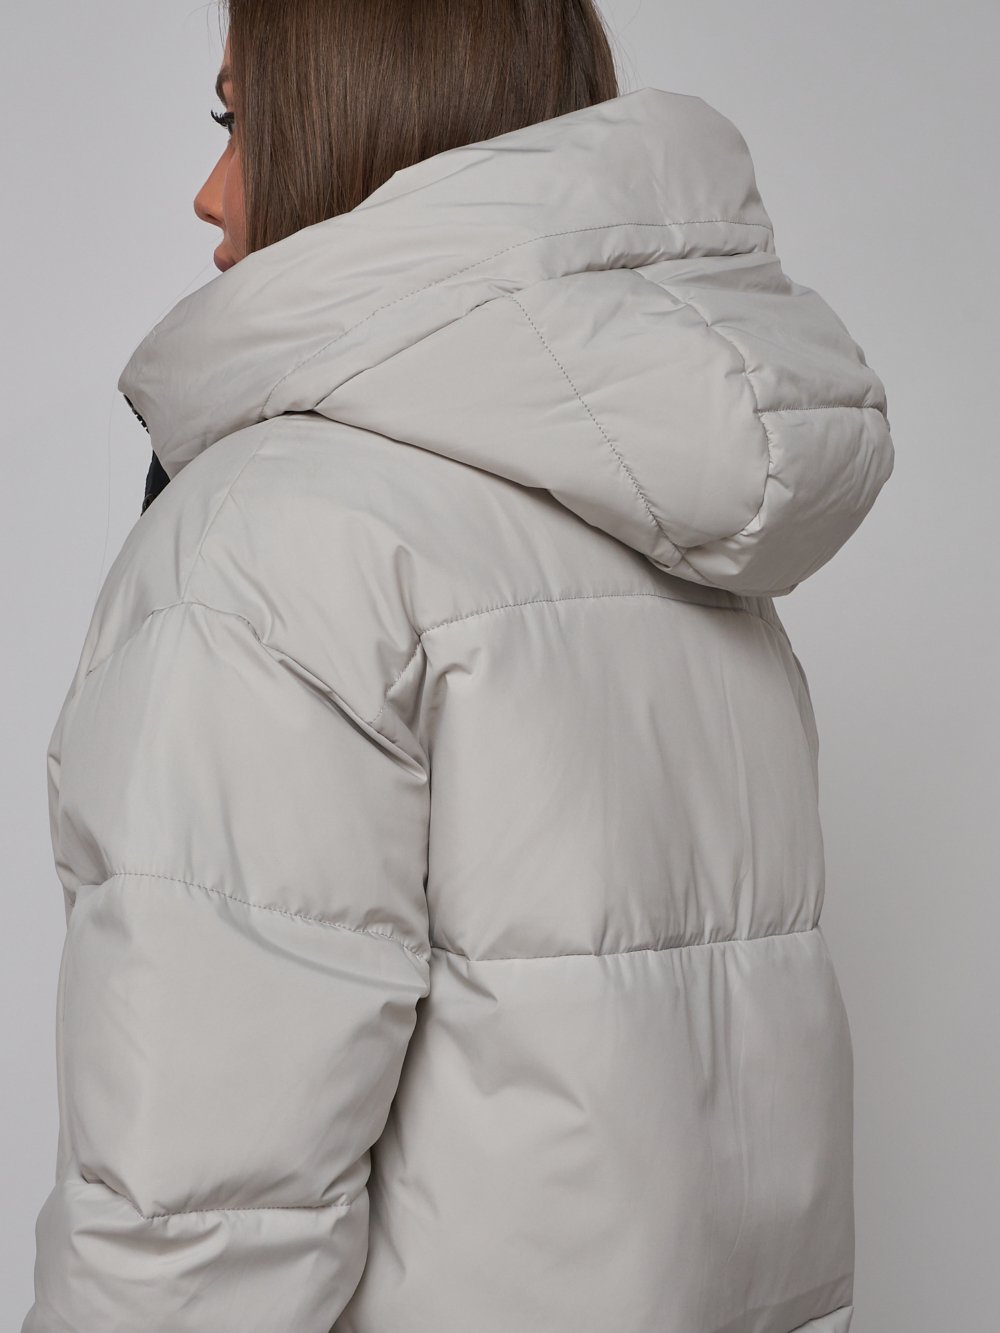 Купить куртку зимнюю оптом от производителя недорого в Москве 52309SS 1